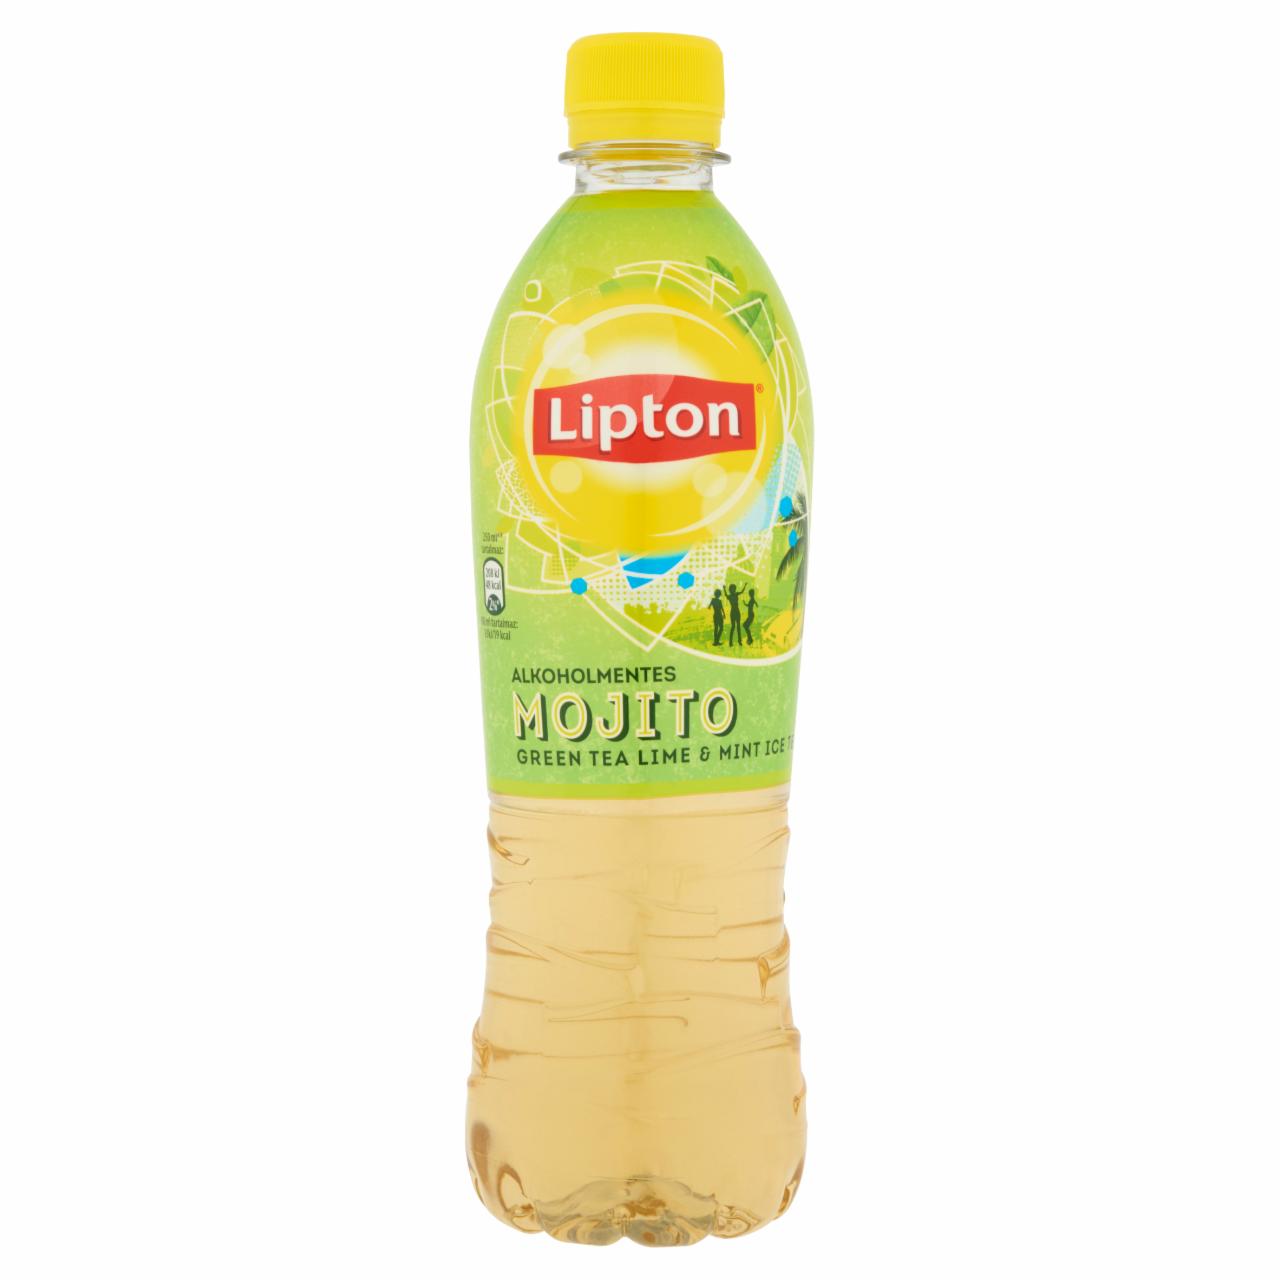 Képek - Lipton Green Tea Mojito alkoholmentes citrom-menta ízű szénsavmentes üdítőital 0,5 l